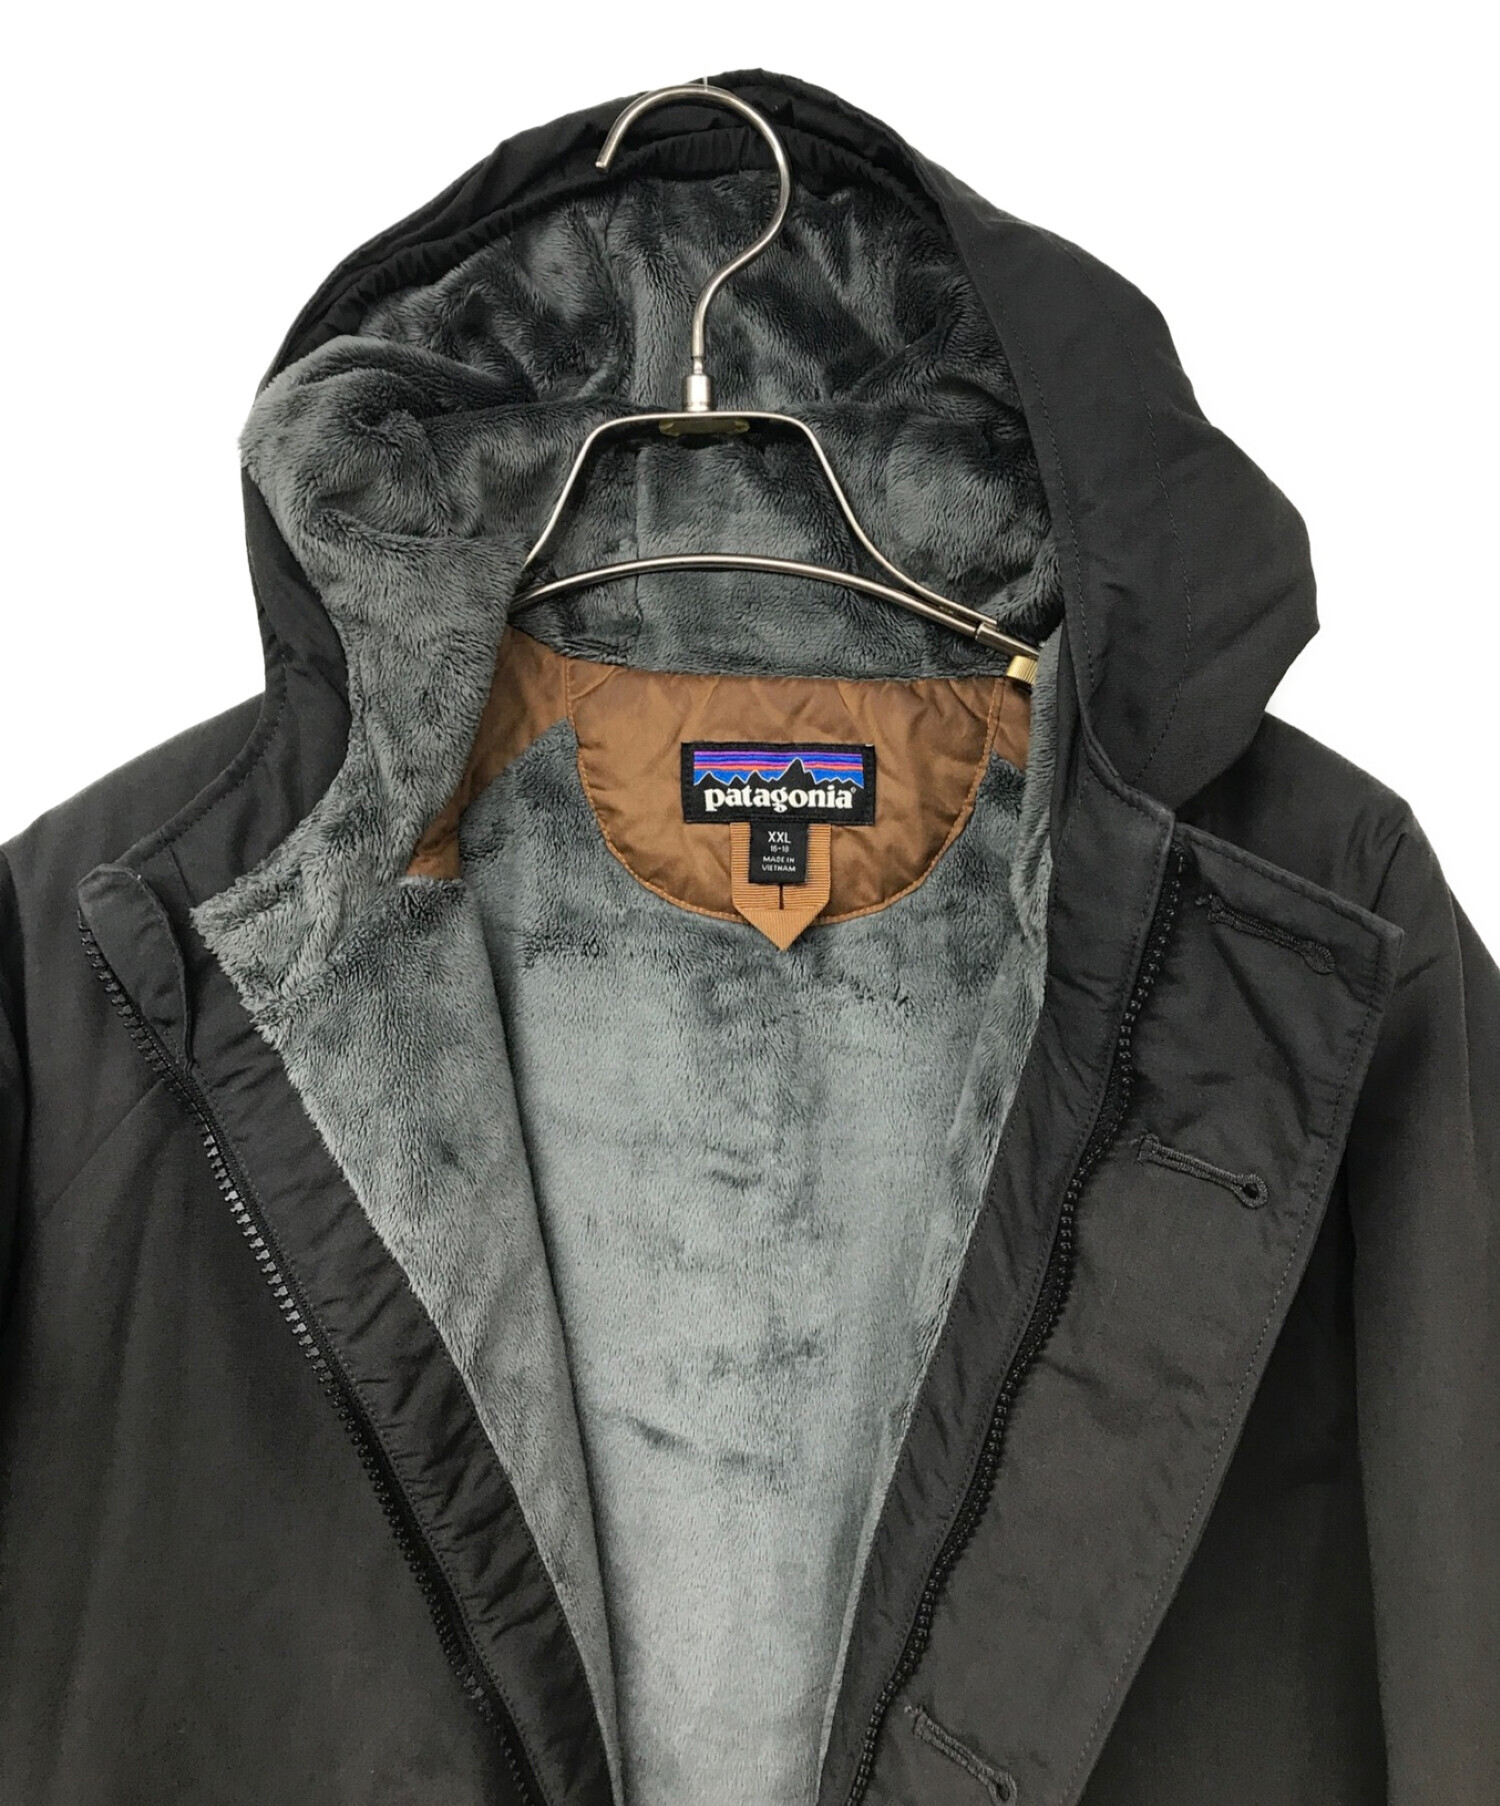 Patagonia (パタゴニア) Boys Insulated Isthmus Jacket/ボーイズインサレーテッドイスマスジャケット ブラック  サイズ:XXL